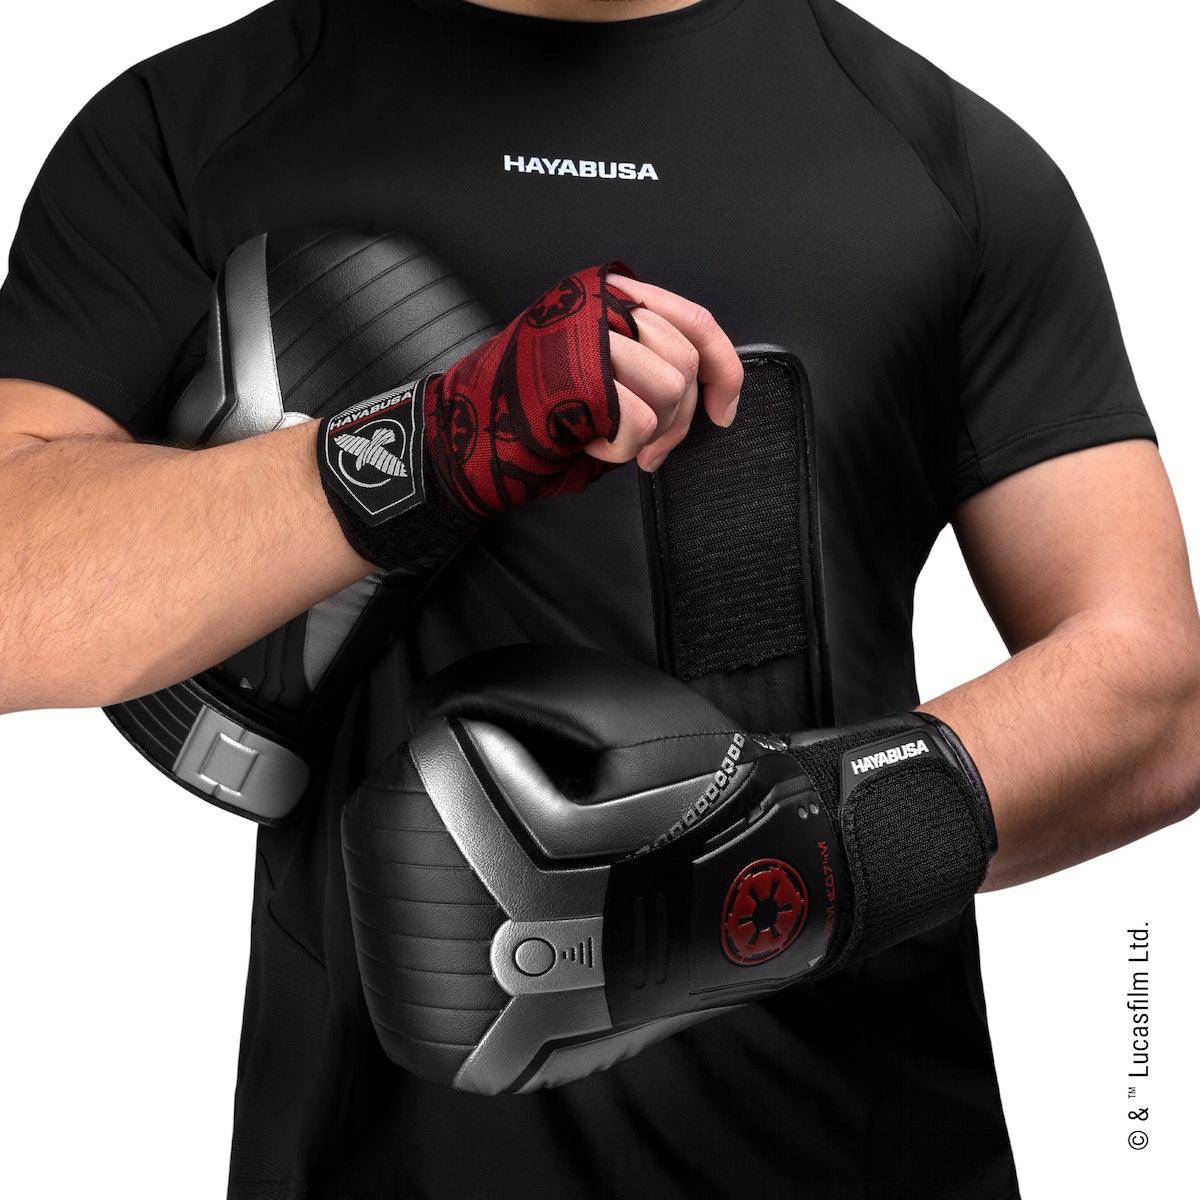 Star Wars Sith Boxing Gloves - Violent Art Shop